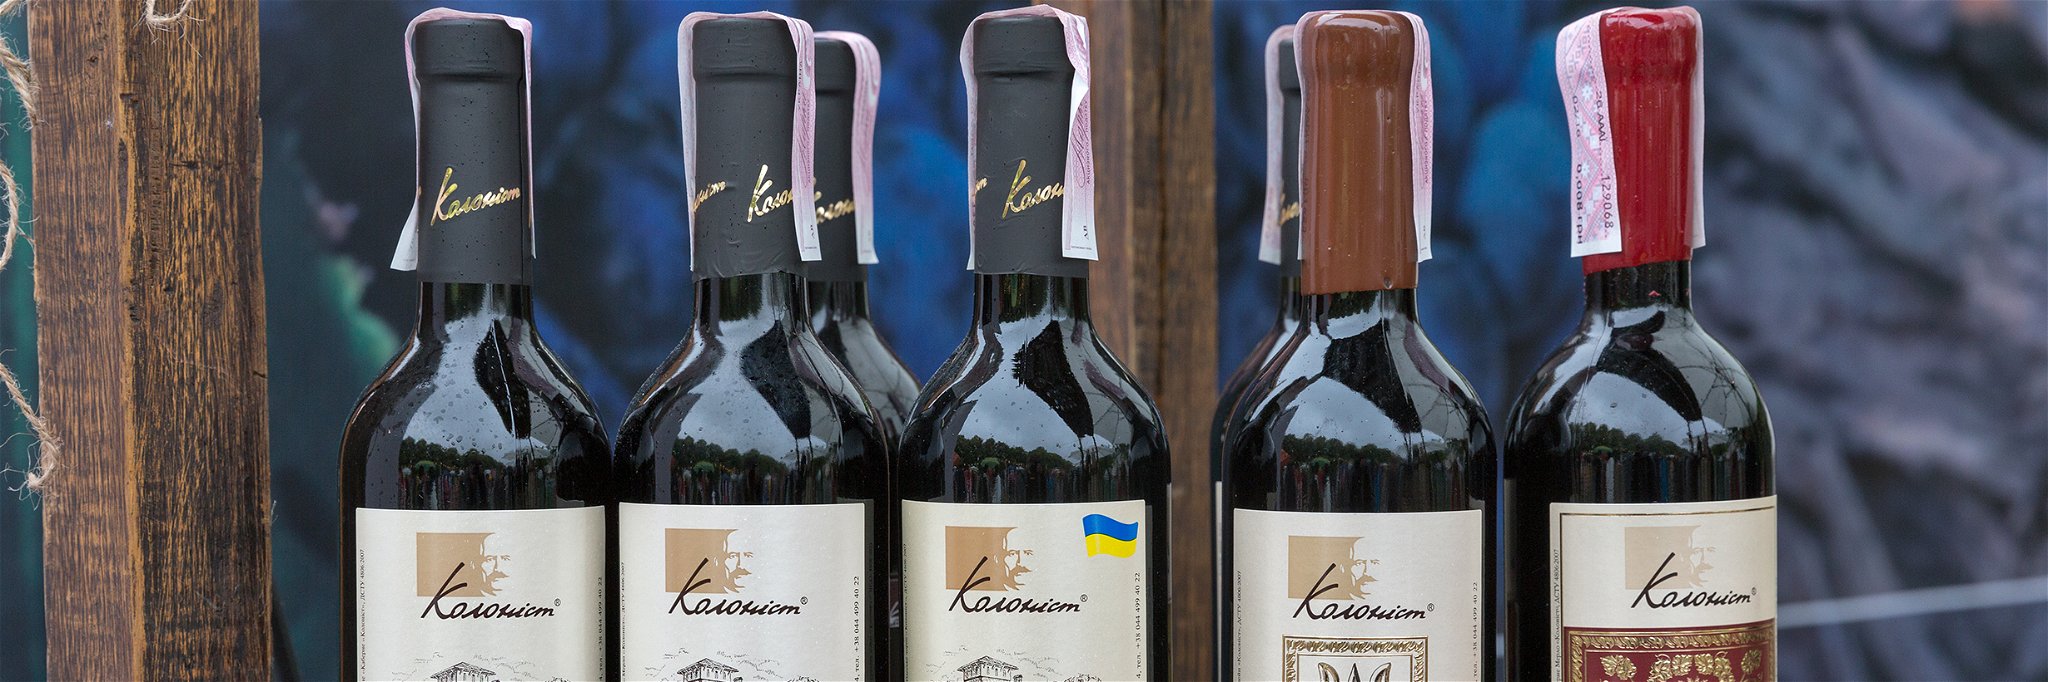 Auswahl an Weinen aus der Ukraine.